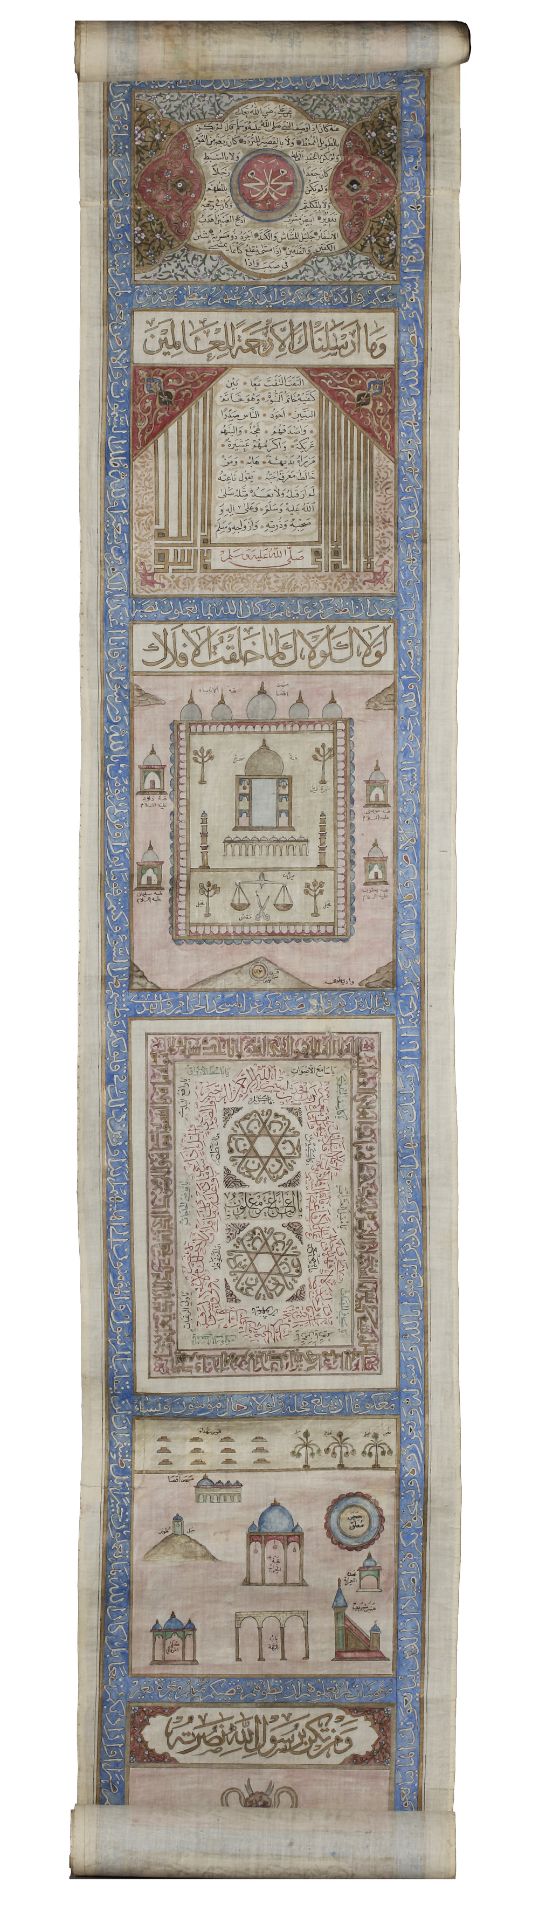 AN OTTOMAN ILLUMINATED HAJJ SCROLL, WRITTEN BY ABDUL-ALAH BIN HUSSAIN IN 1287 AH/1873 AD - Bild 7 aus 12